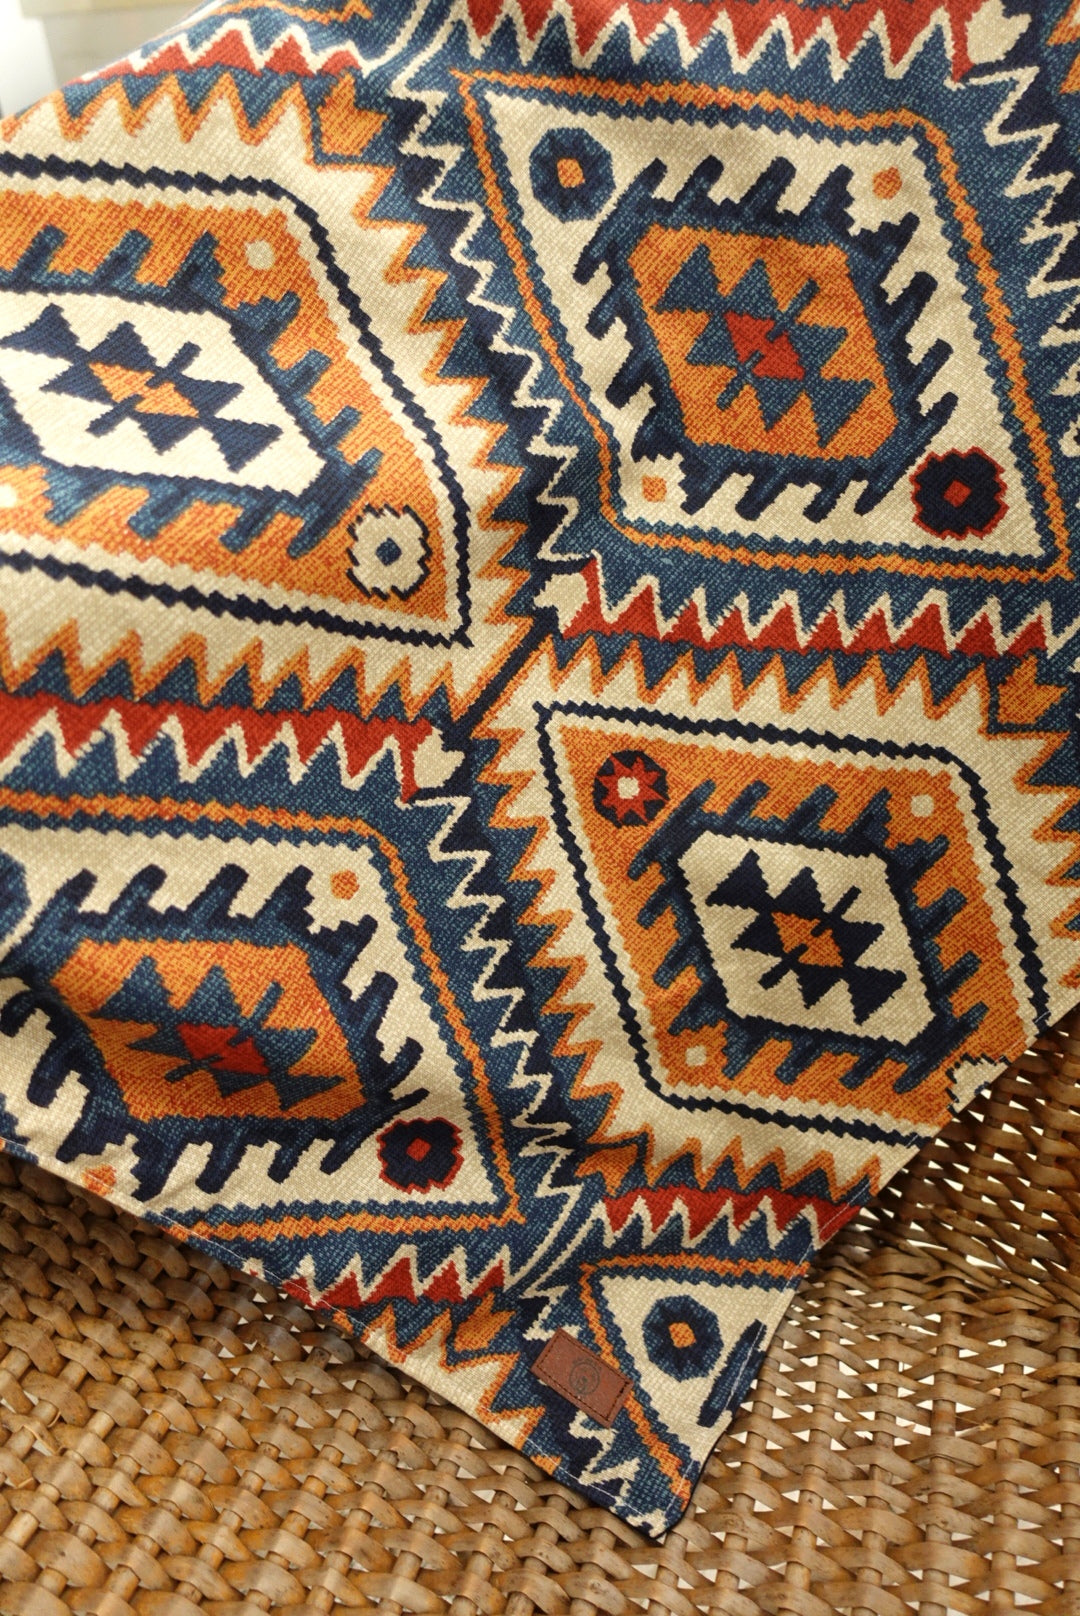 Aztec Blanket